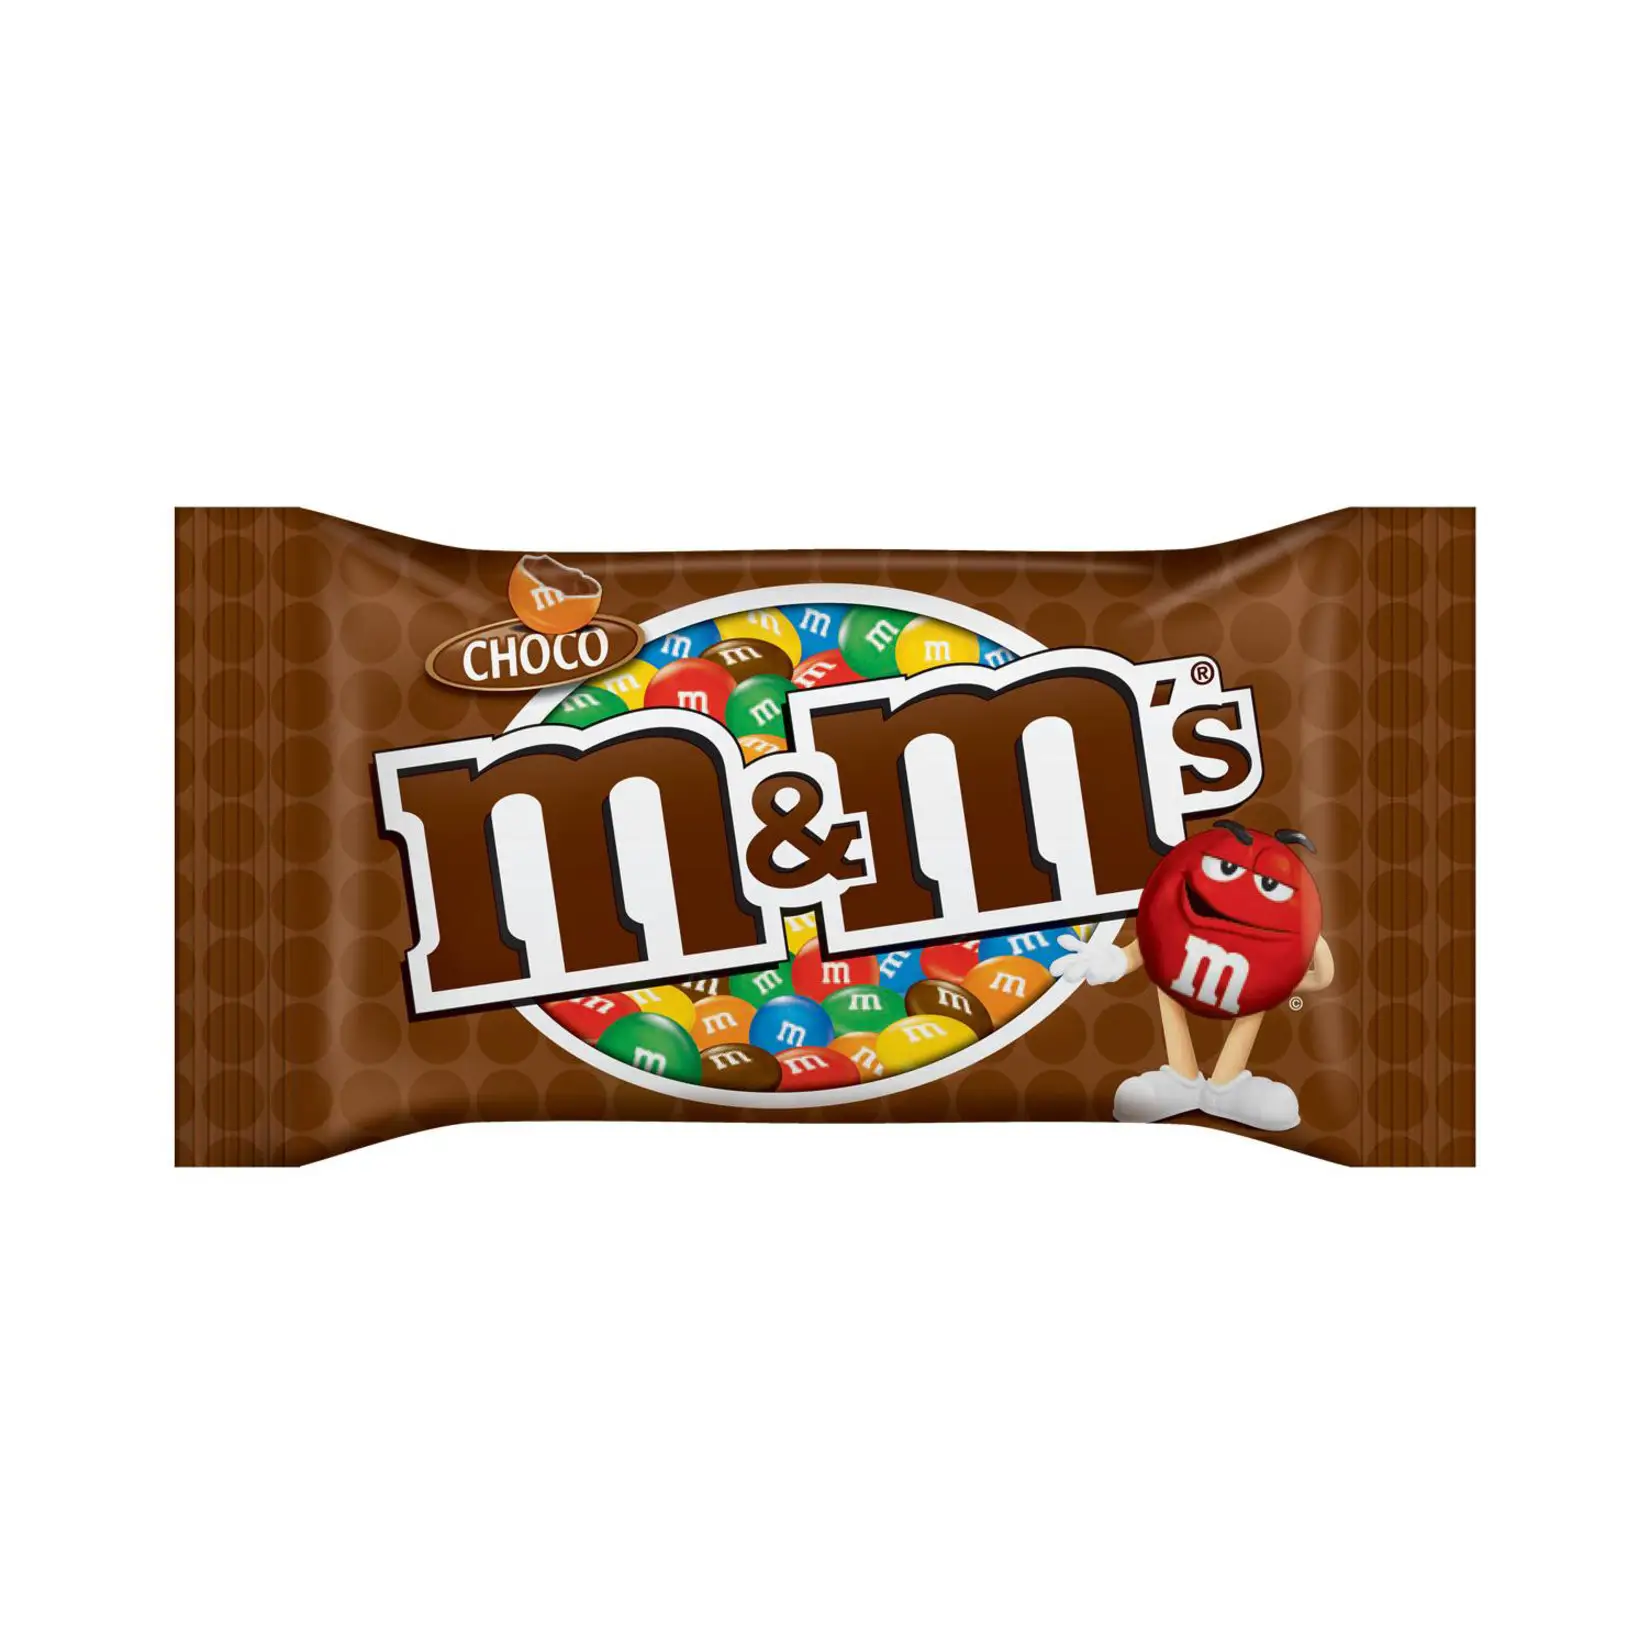 Das beste Großhandels produkt-m & m''s Chocolate